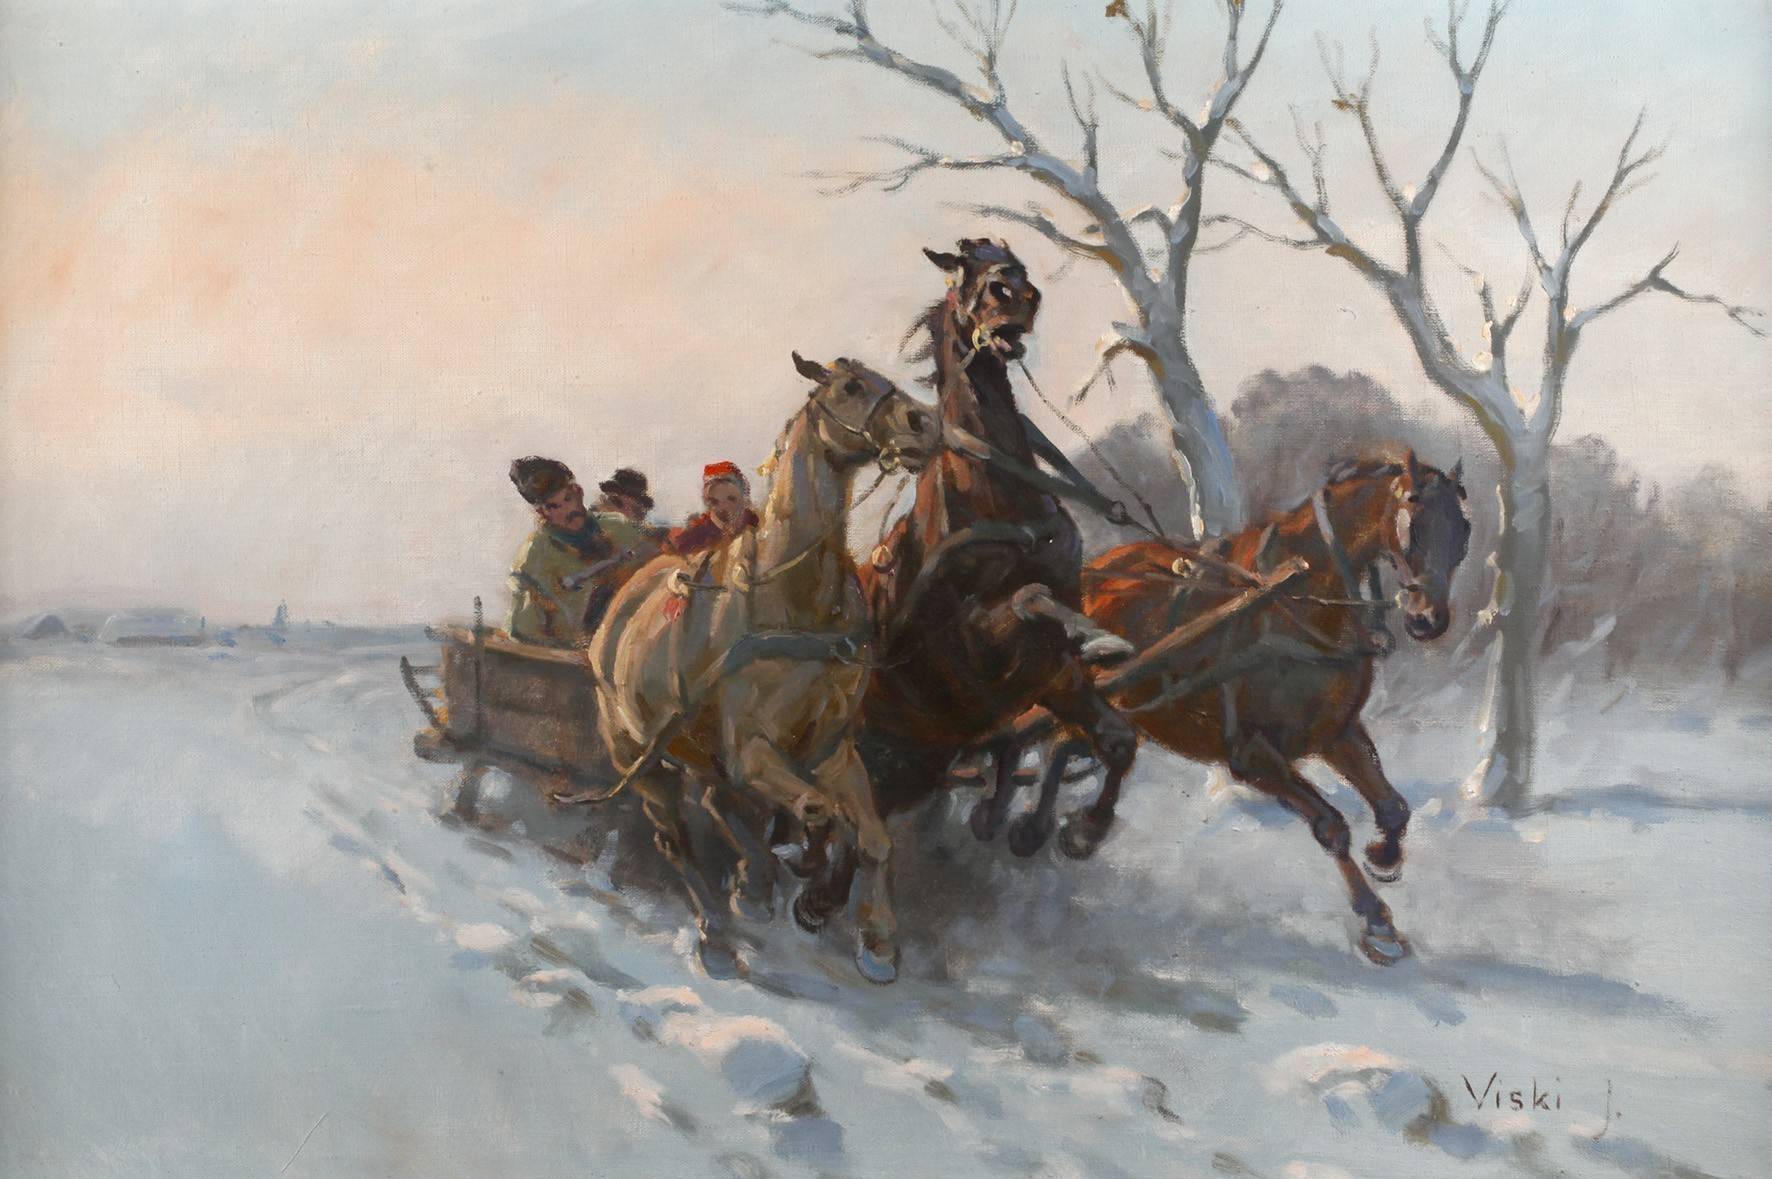 János Viski, Winterliche Pferdeschlittenfahrt in der Dämmerung